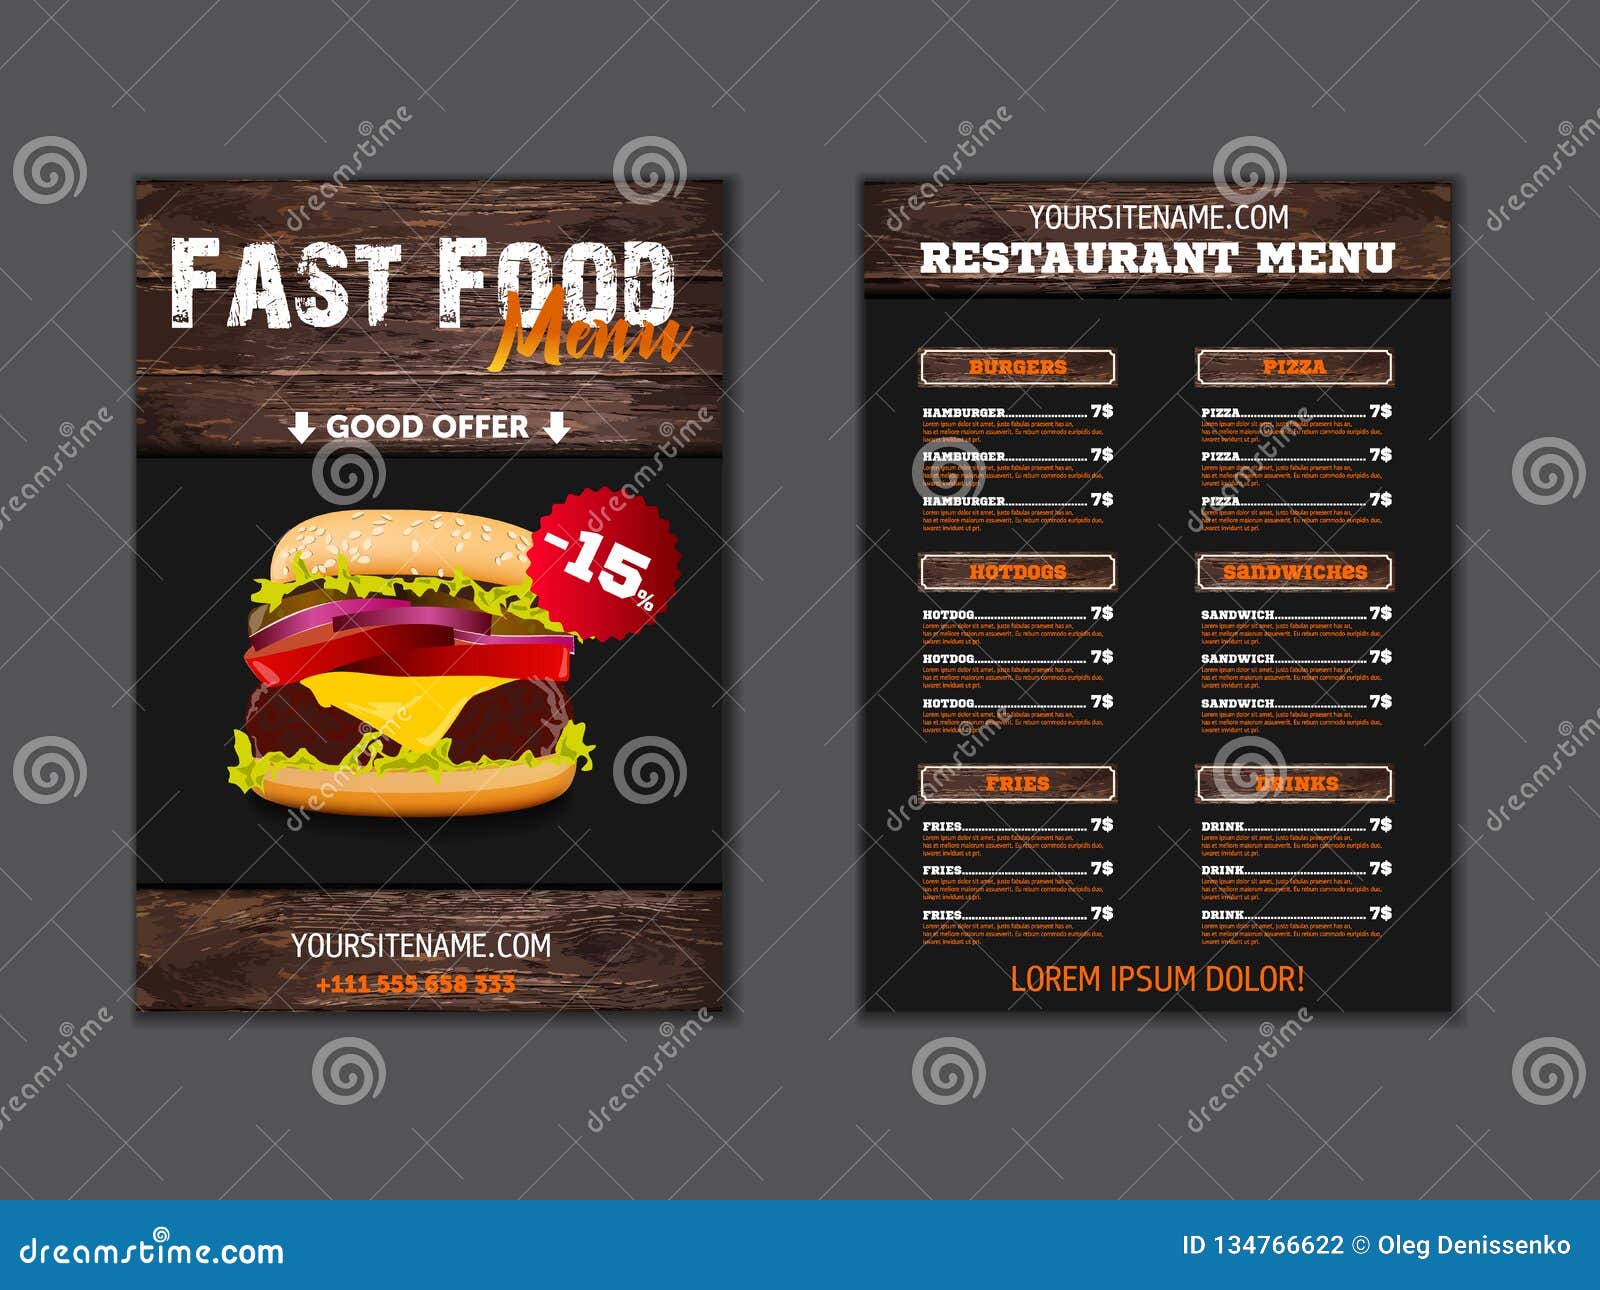 Thiết kế brochure menu đồ ăn nhanh trên nền gỗ sẽ giúp cho menu của nhà hàng trở nên nổi bật và ấn tượng. Với kỹ thuật thiết kế chuyên nghiệp, những hình ảnh đậm nét và màu sắc tươi sáng, bạn sẽ có được một menu đẹp và cuốn hút. Hãy cùng xem hình ảnh để tìm thêm ý tưởng cho menu của nhà hàng của bạn. 